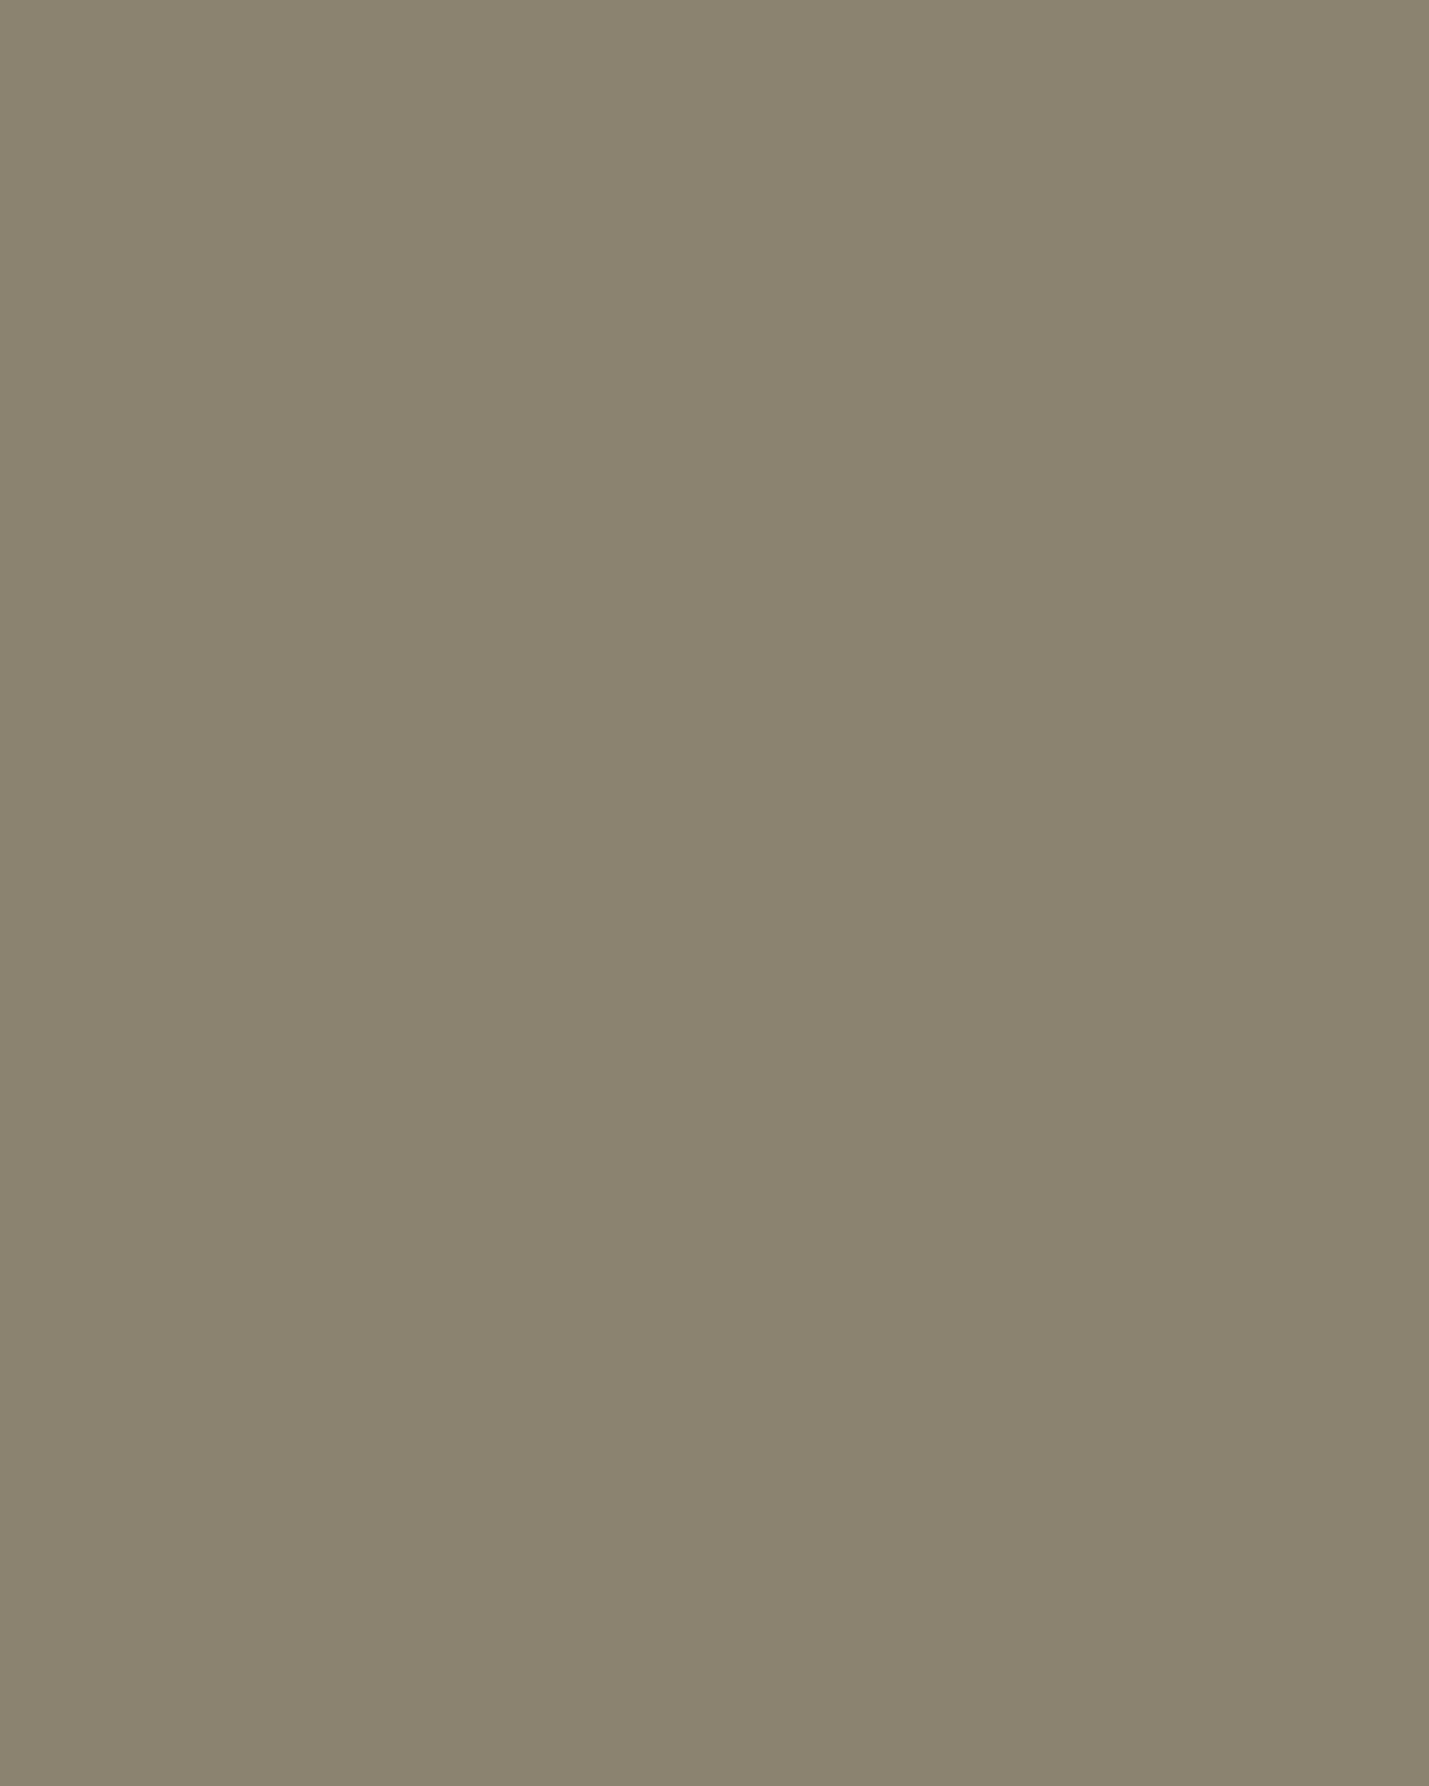 Борис Кустодиев. Торговка овощами. Из серии «Русь. Русские типы». 1920. Музей-квартира И.И. Бродского, Санкт-Петербург